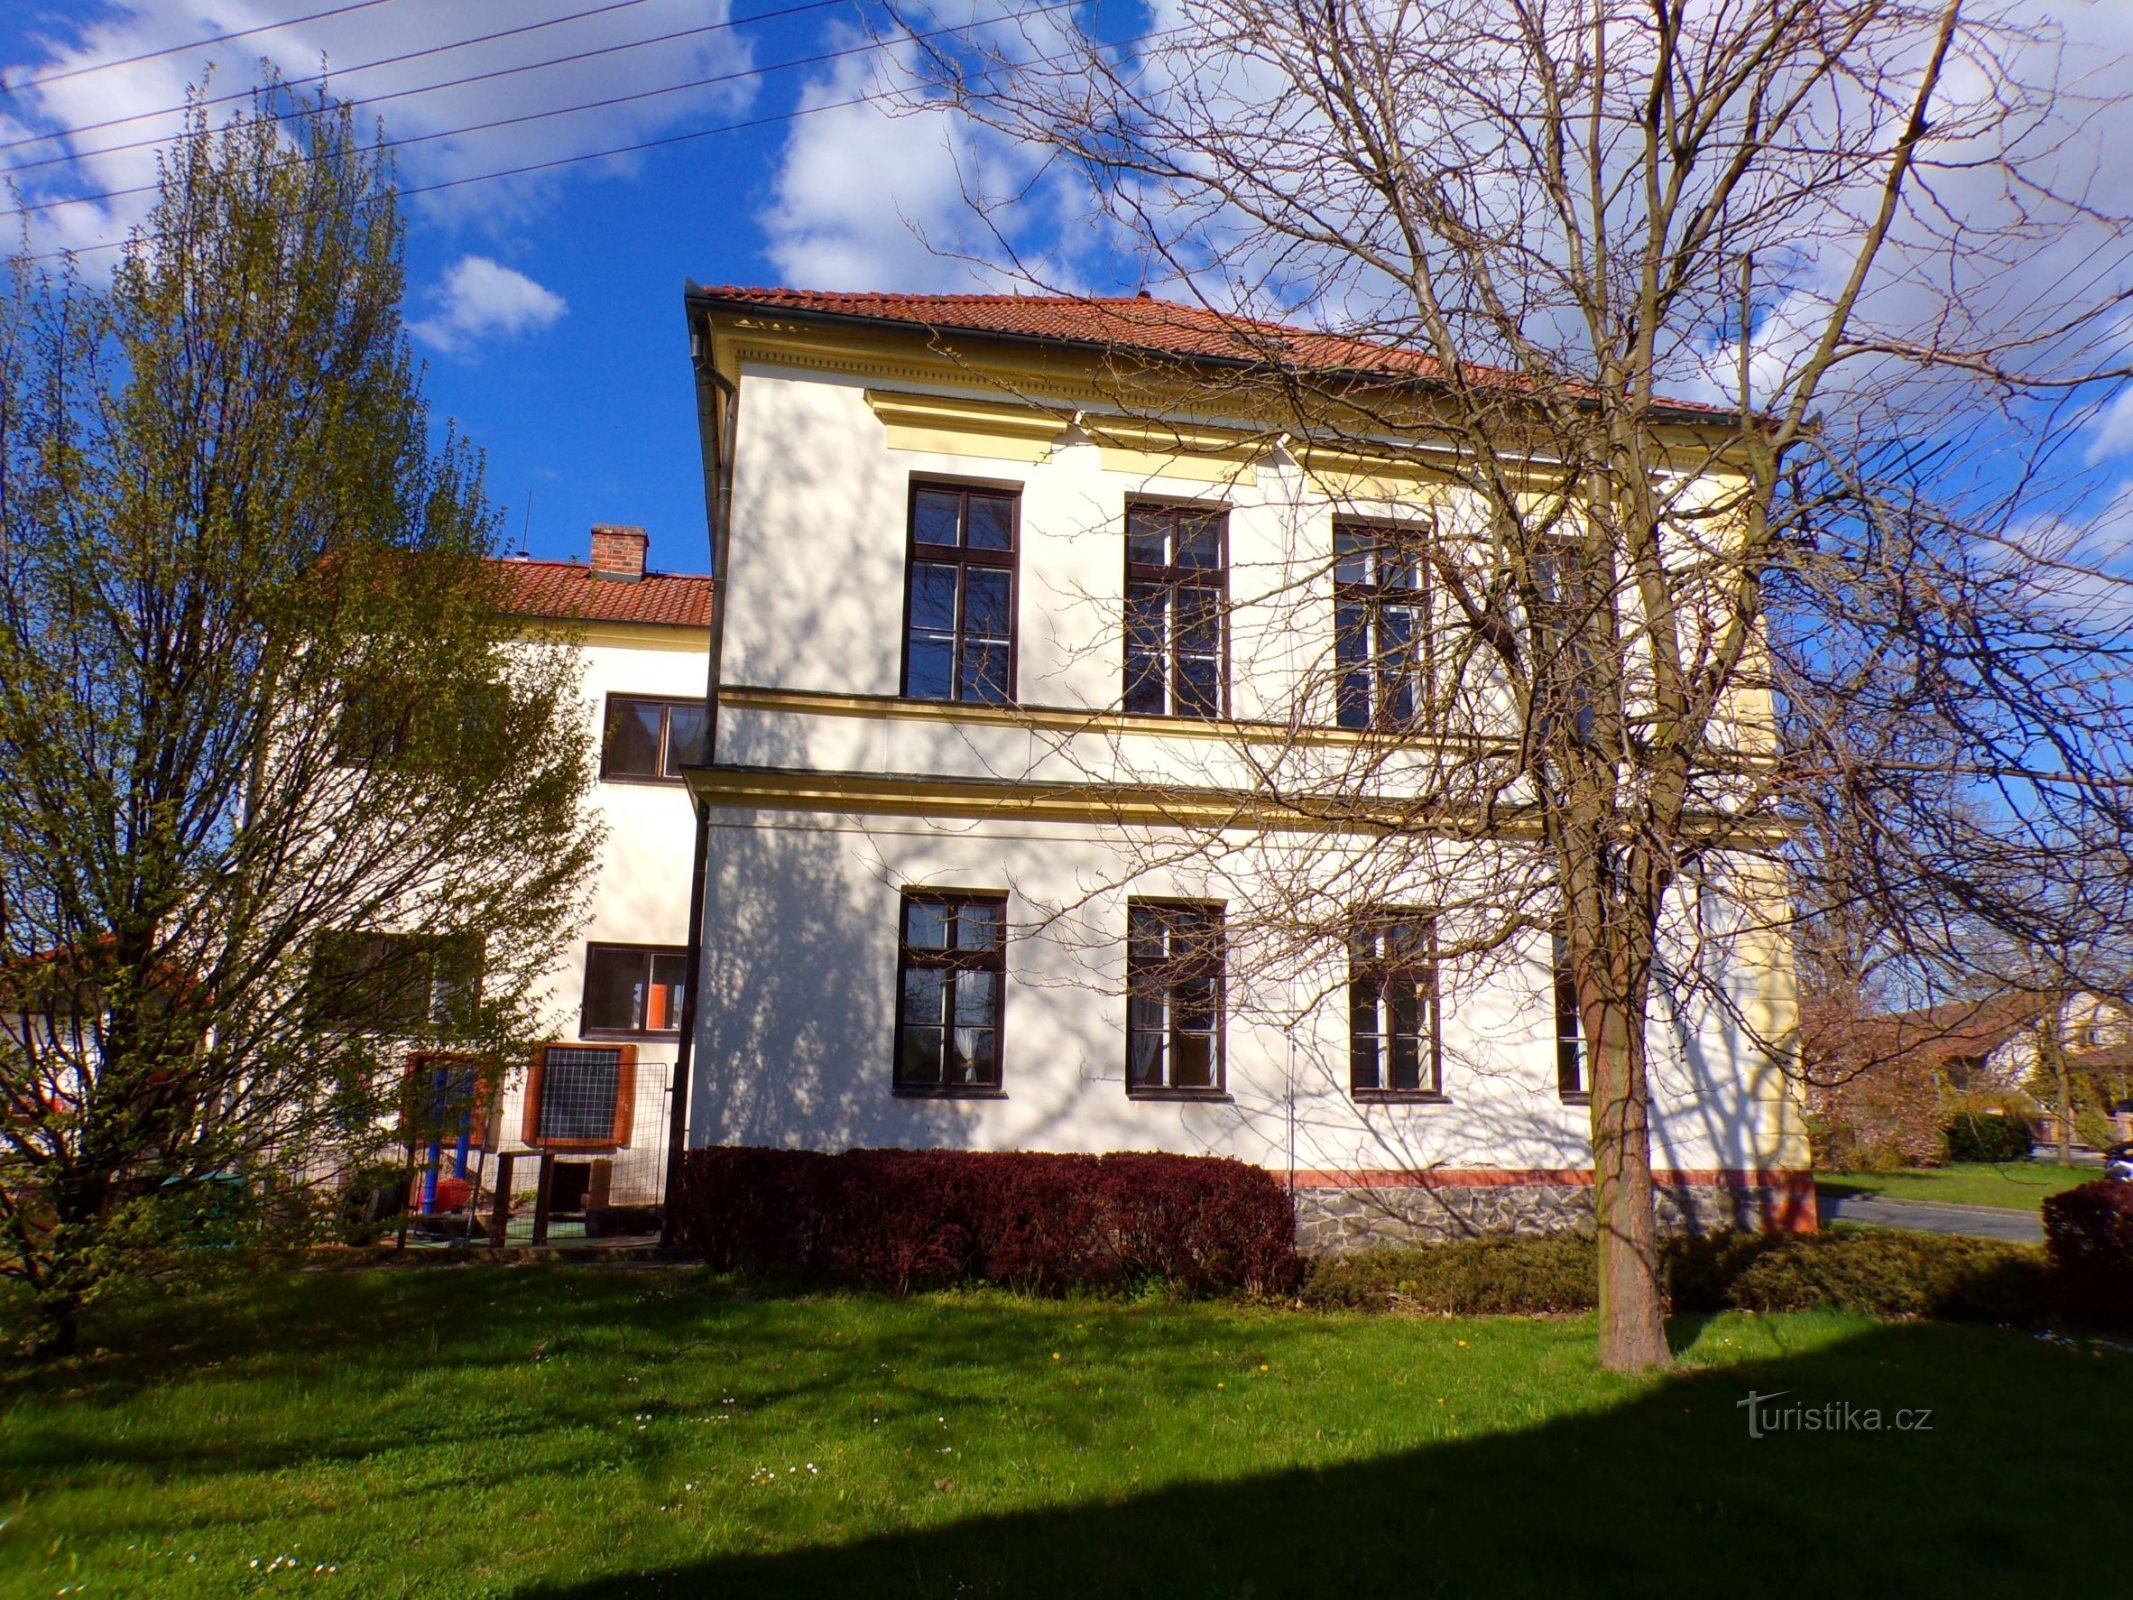 Σχολείο στο Rosice nad Labem (Pardubice, 23.4.2022/XNUMX/XNUMX)